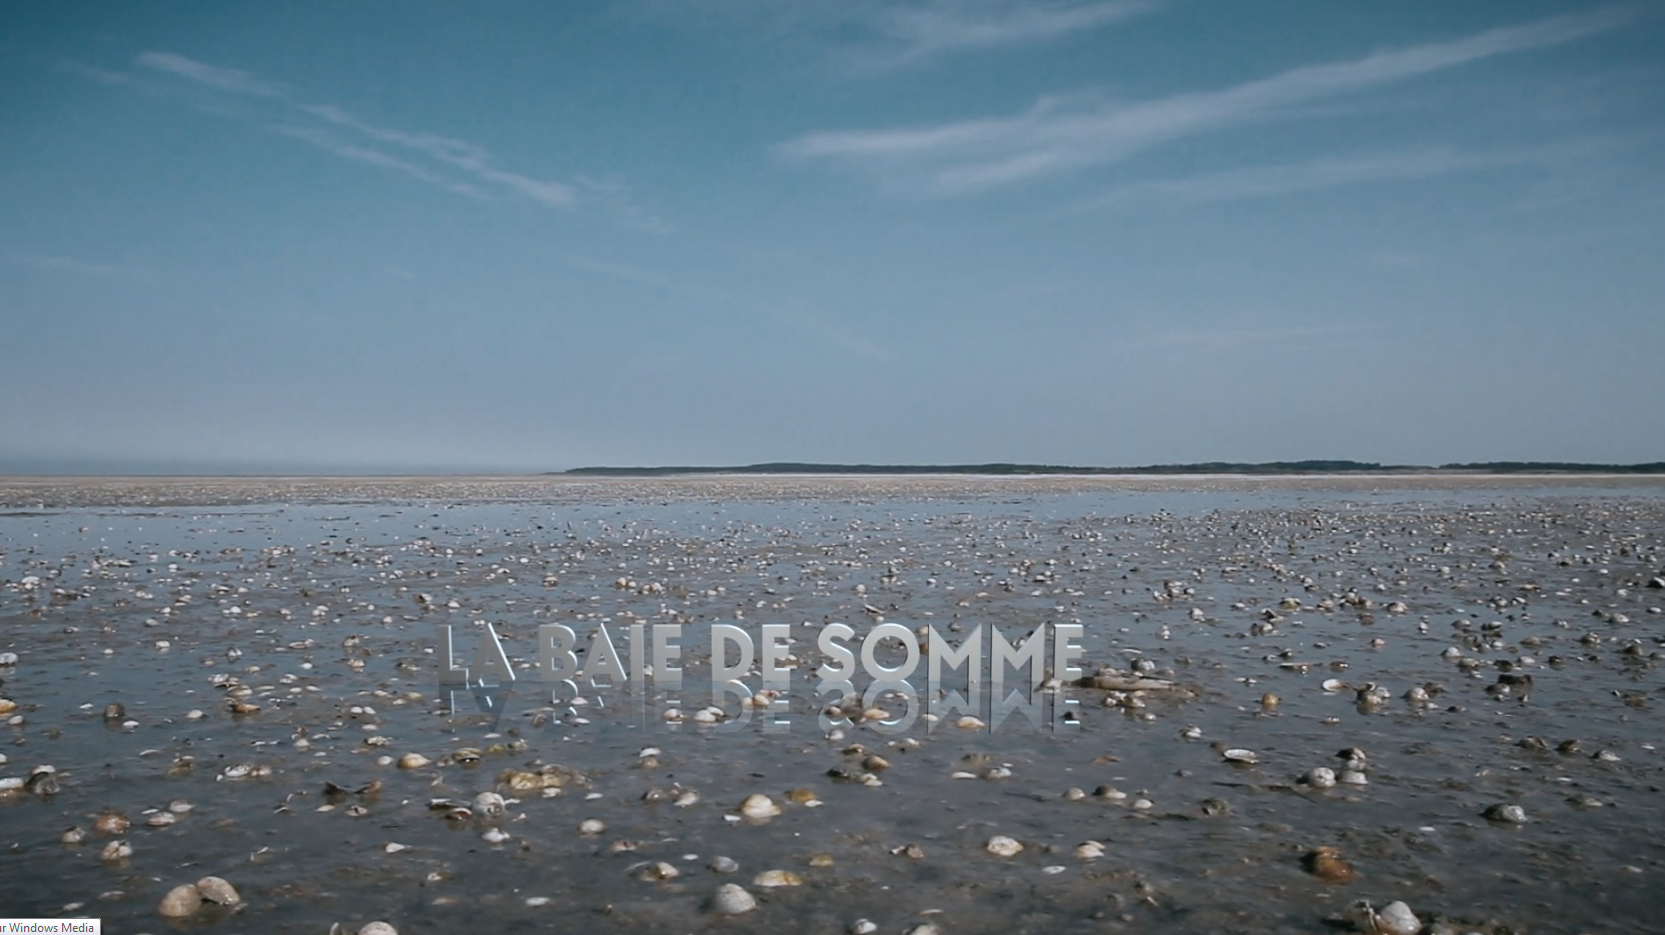 La baie de Somme